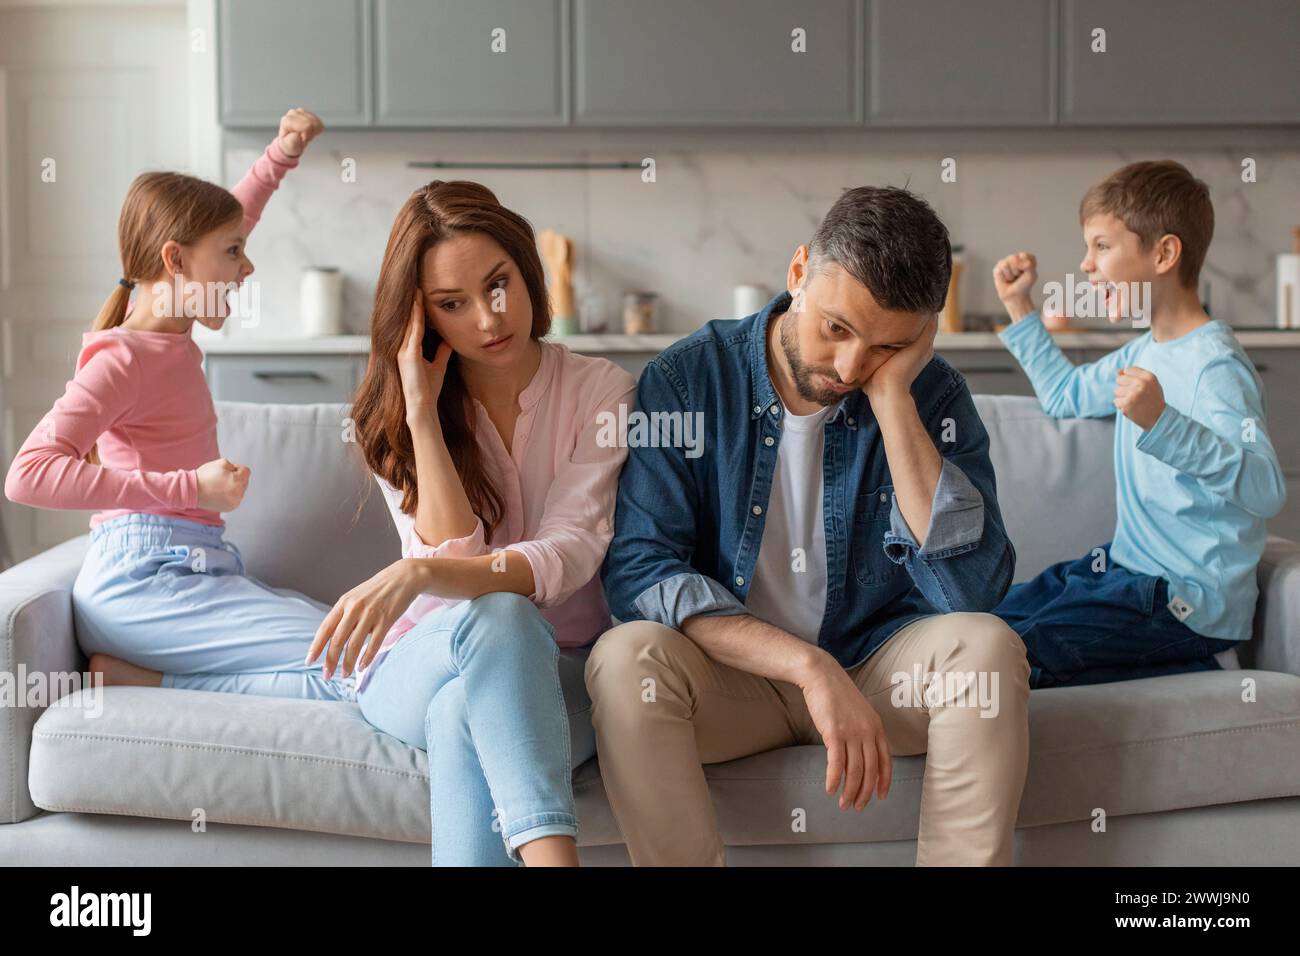 Zwei Kinder, die sich anschreien, gestresste Eltern, die neben ihnen sitzen Stockfoto